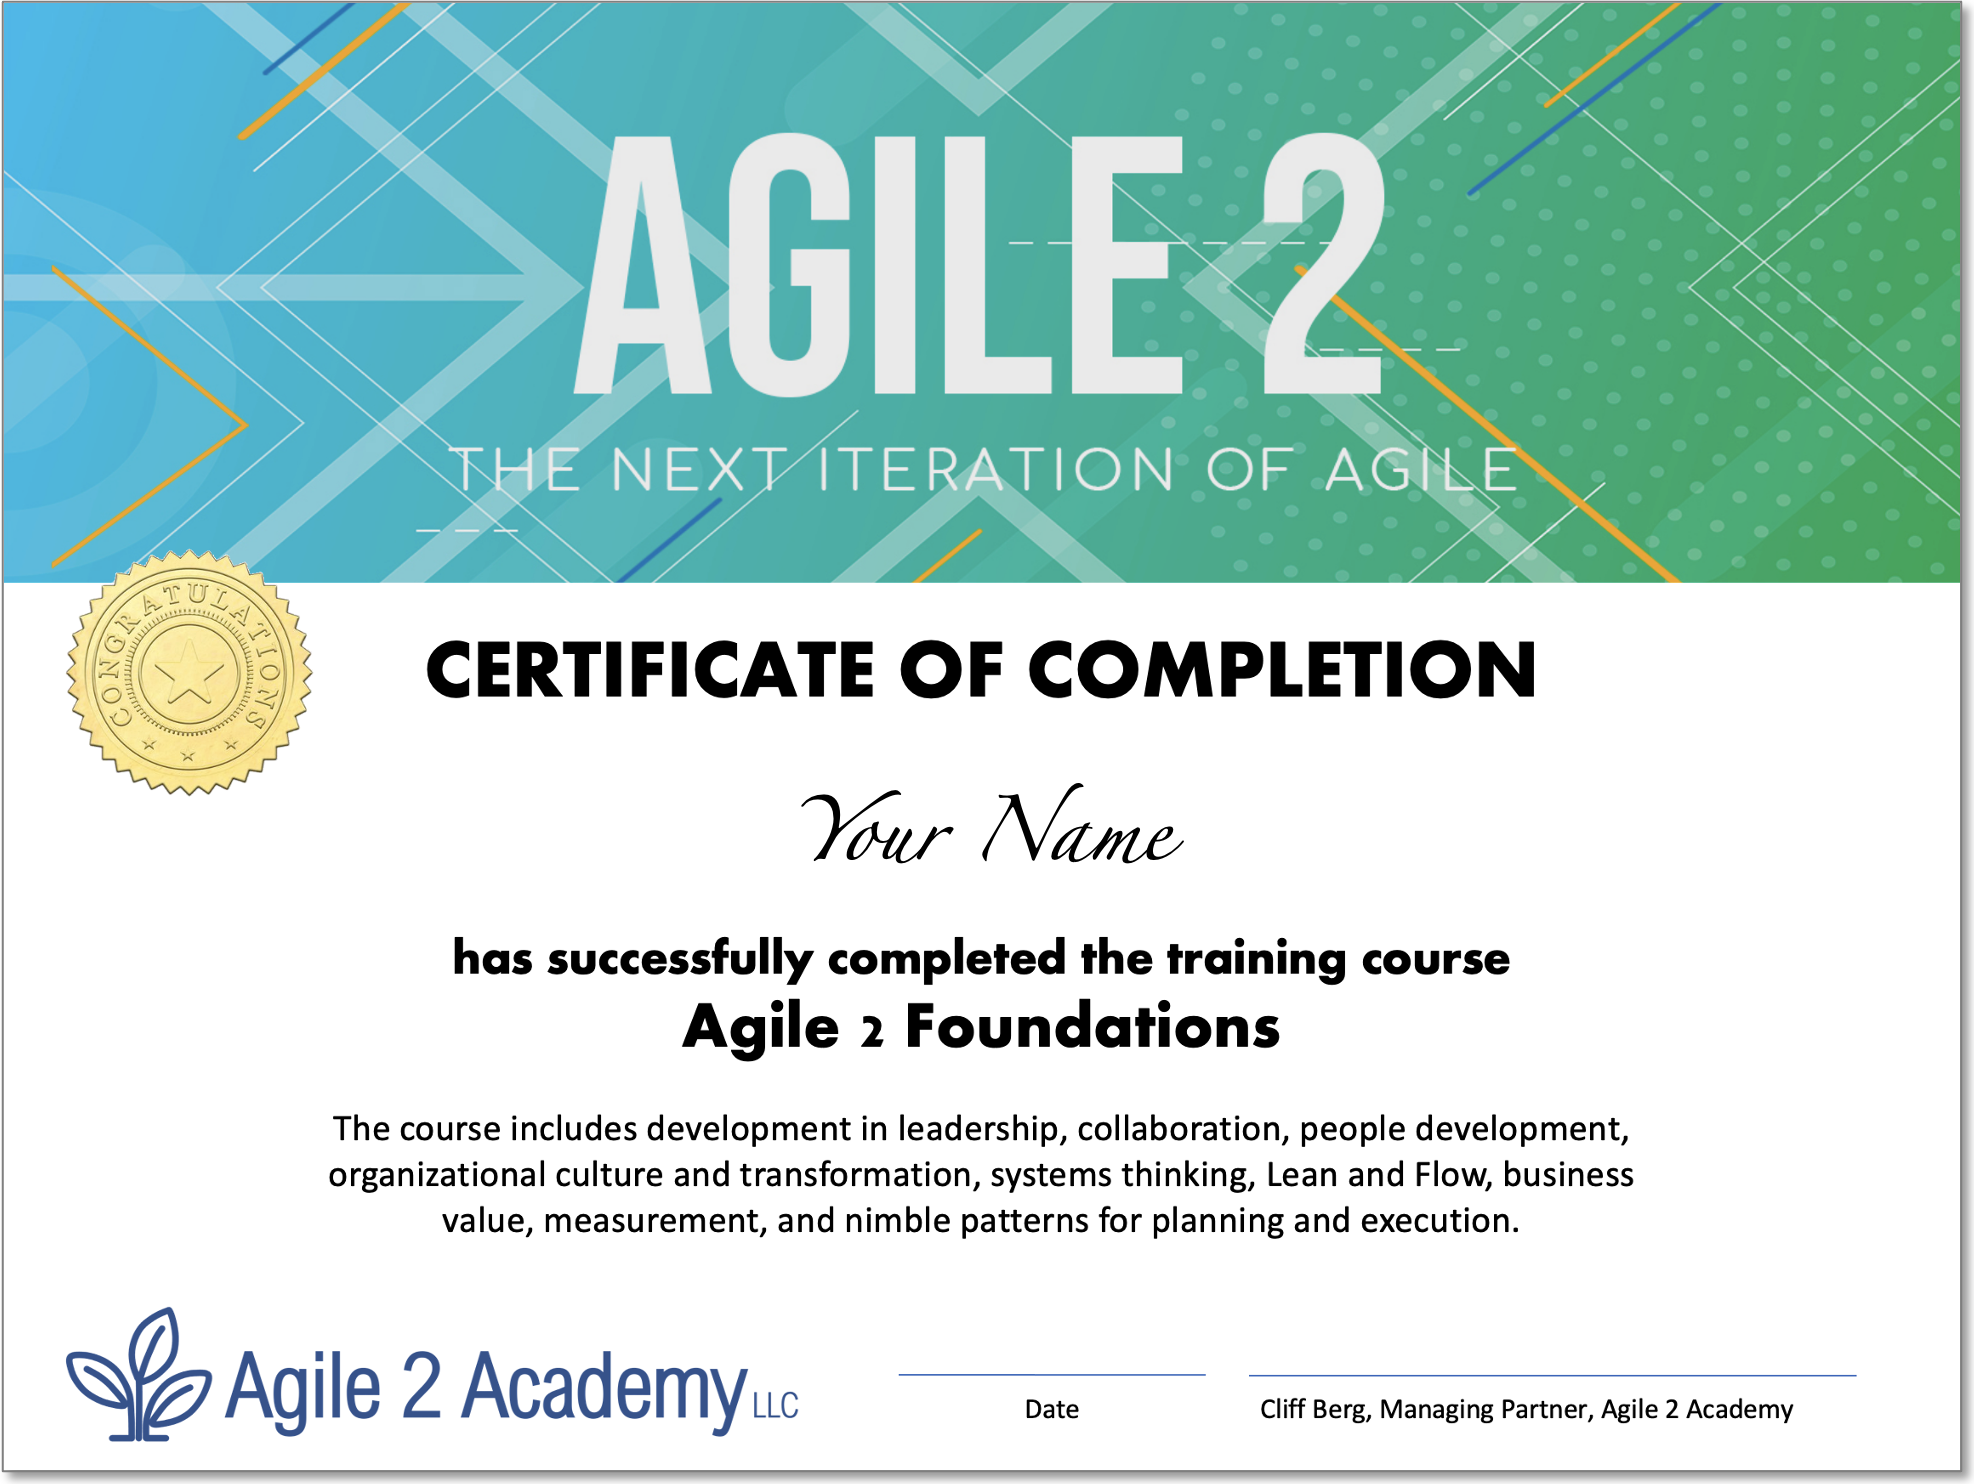 Agile 2 Foundations — The Agile 2 Academy